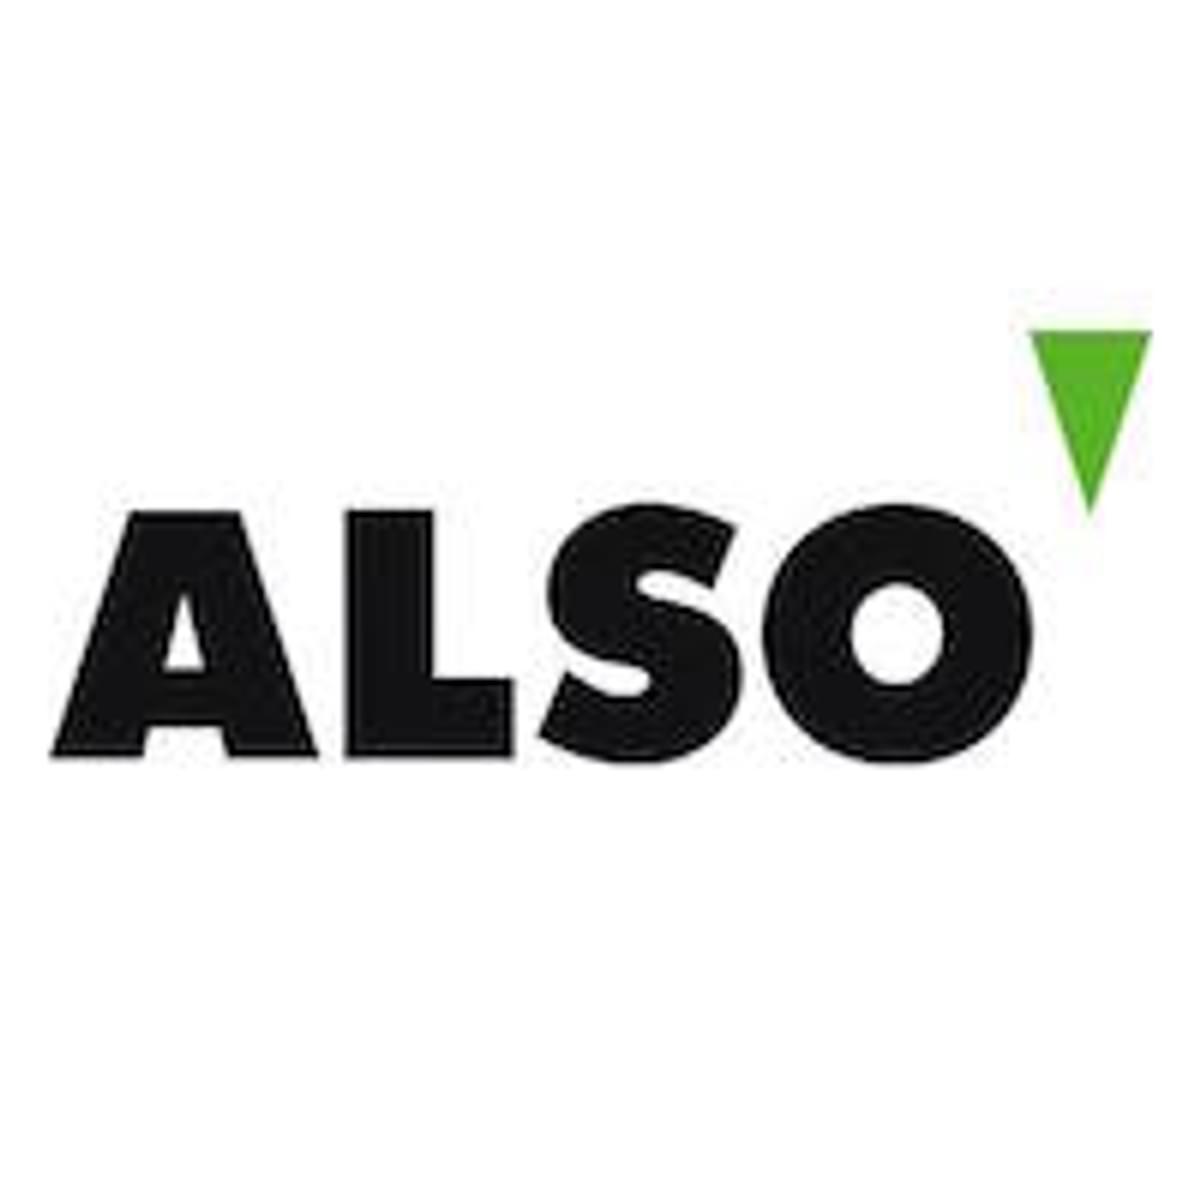 ALSO voegt beveiliging van Acronis toe aan ALSO Cloud Marketplace image